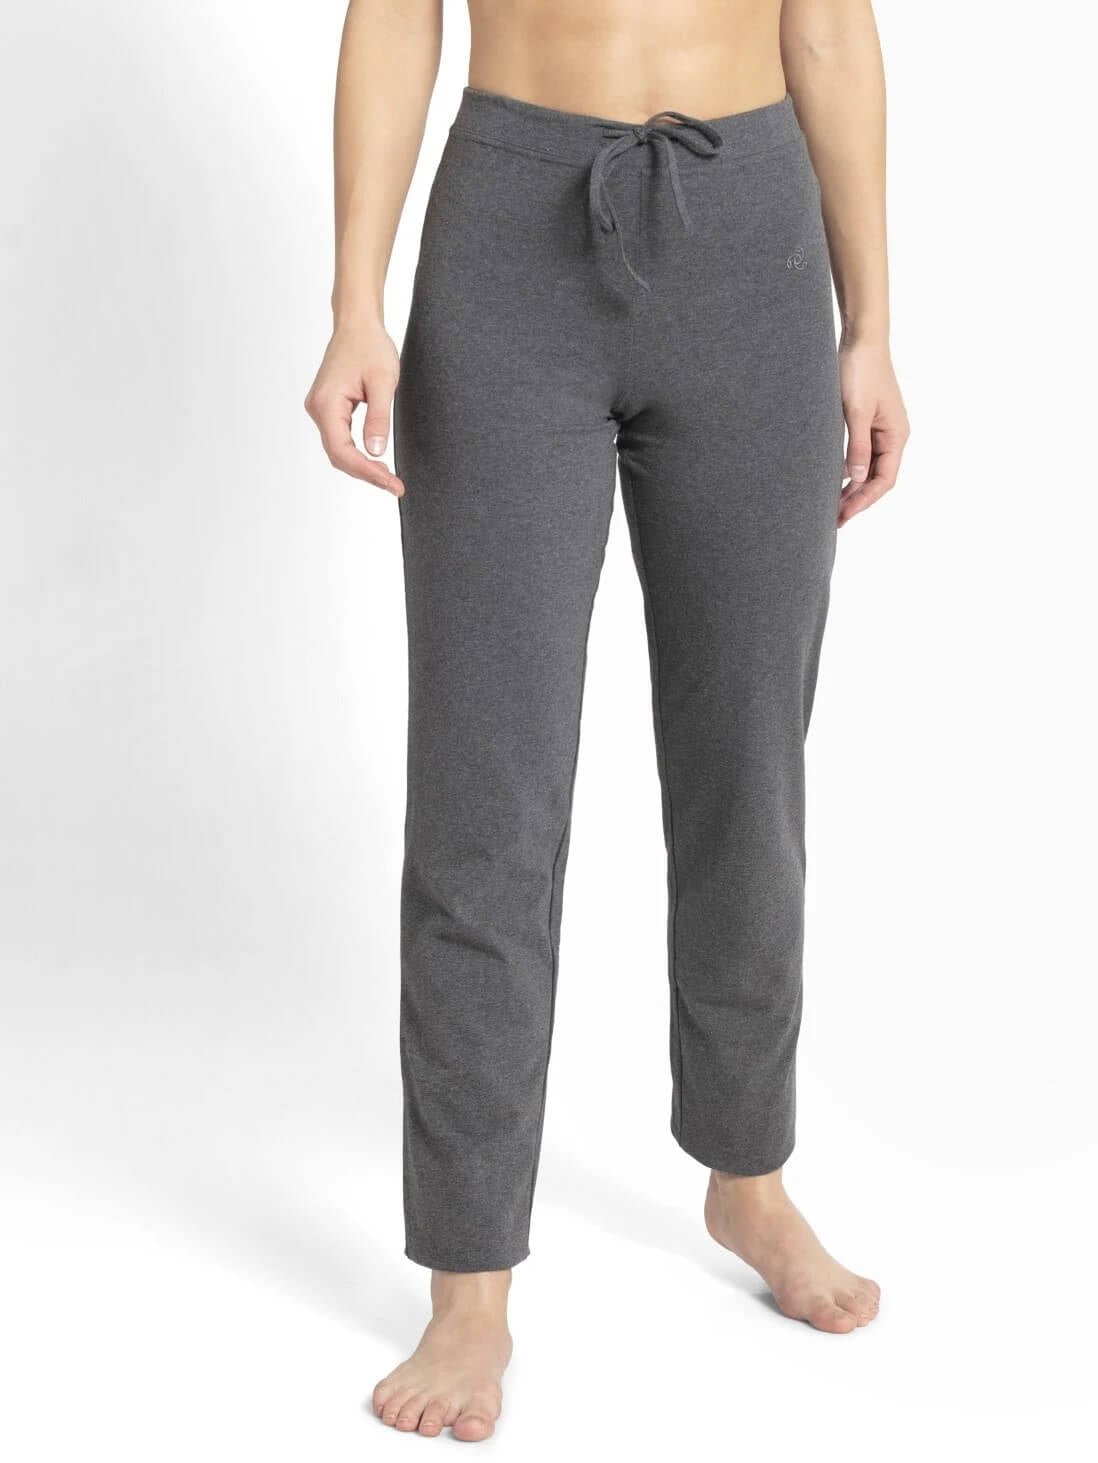 Hue Women's Plus Size Polka Dot Knit Pajama Pants Gray/Pink | eBay